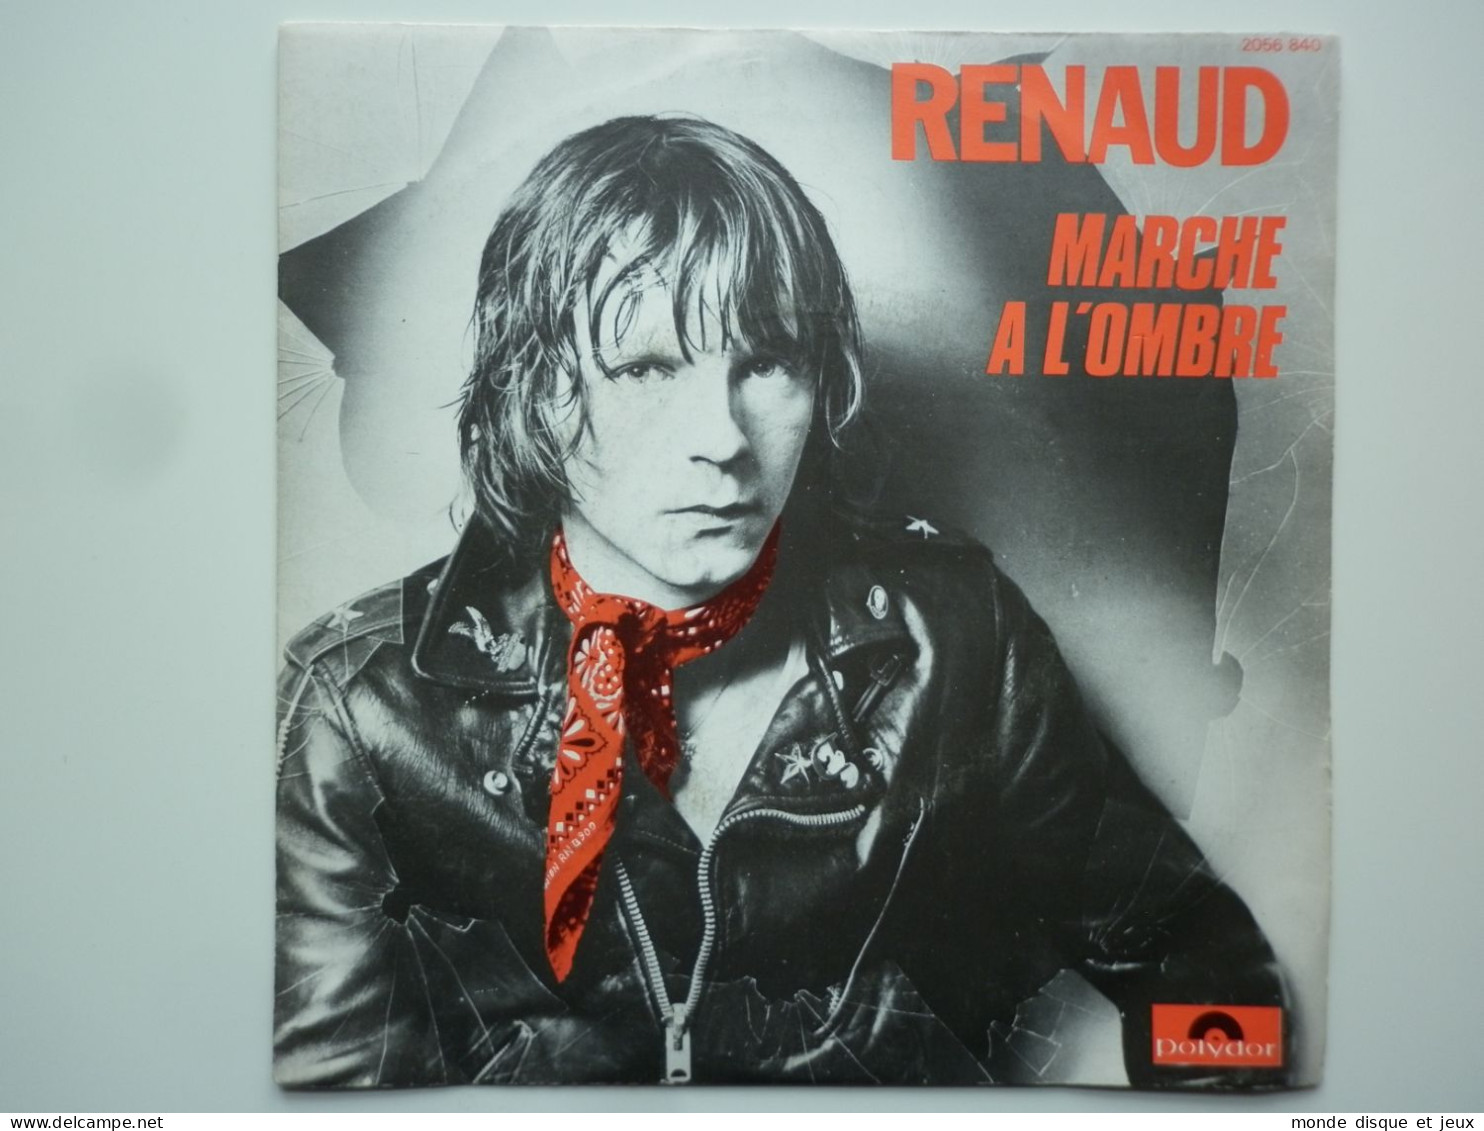 Renaud 45Tours SP Vinyle Marche A L'ombre / Dans Mon H.L.M - Other - French Music